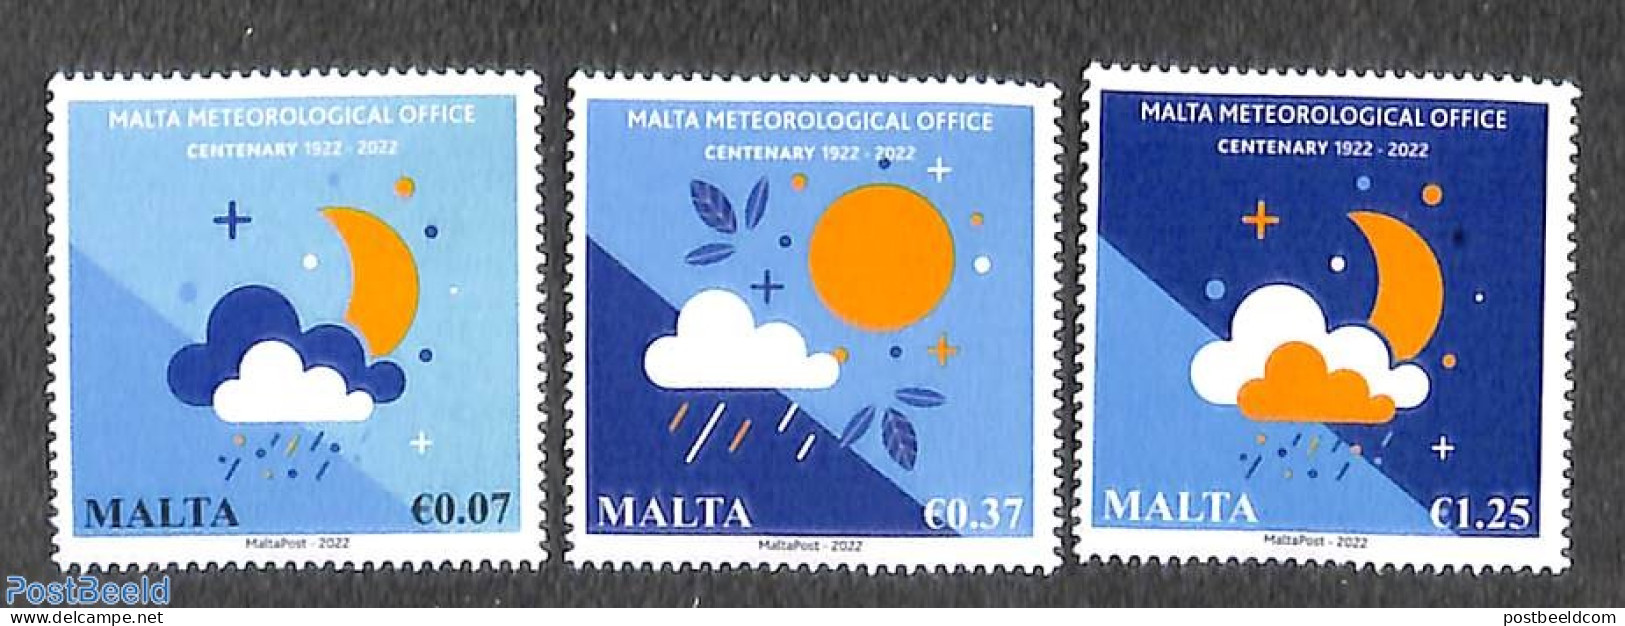 Malta 2022 Centenary Of Meteorological Office 3v, Mint NH, Science - Meteorology - Climate & Meteorology